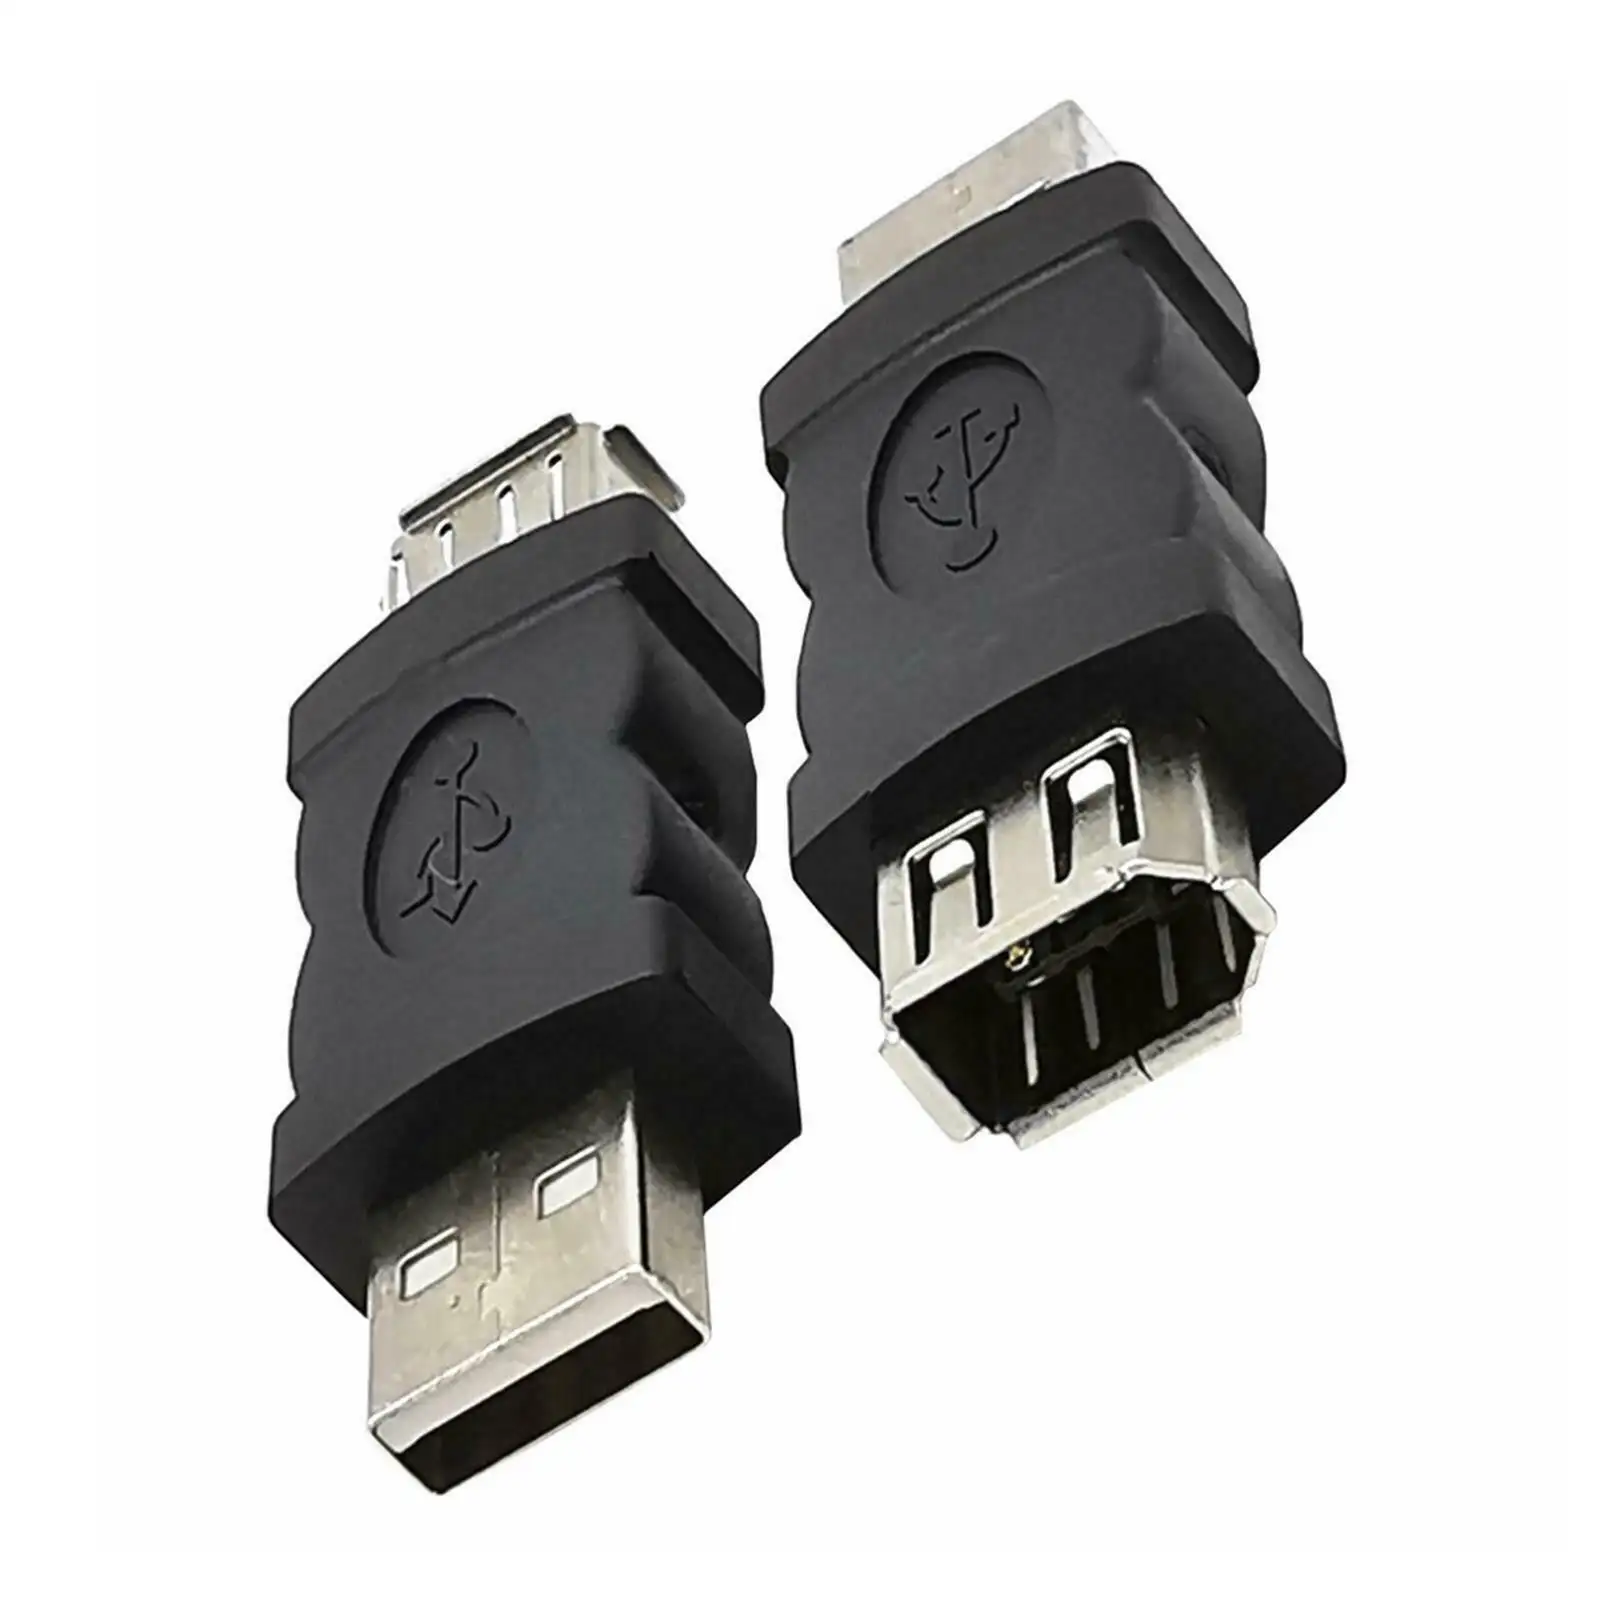 Novo Firewire IEEE 1394 conversor adaptador fêmea de 6 pinos F para USB M macho